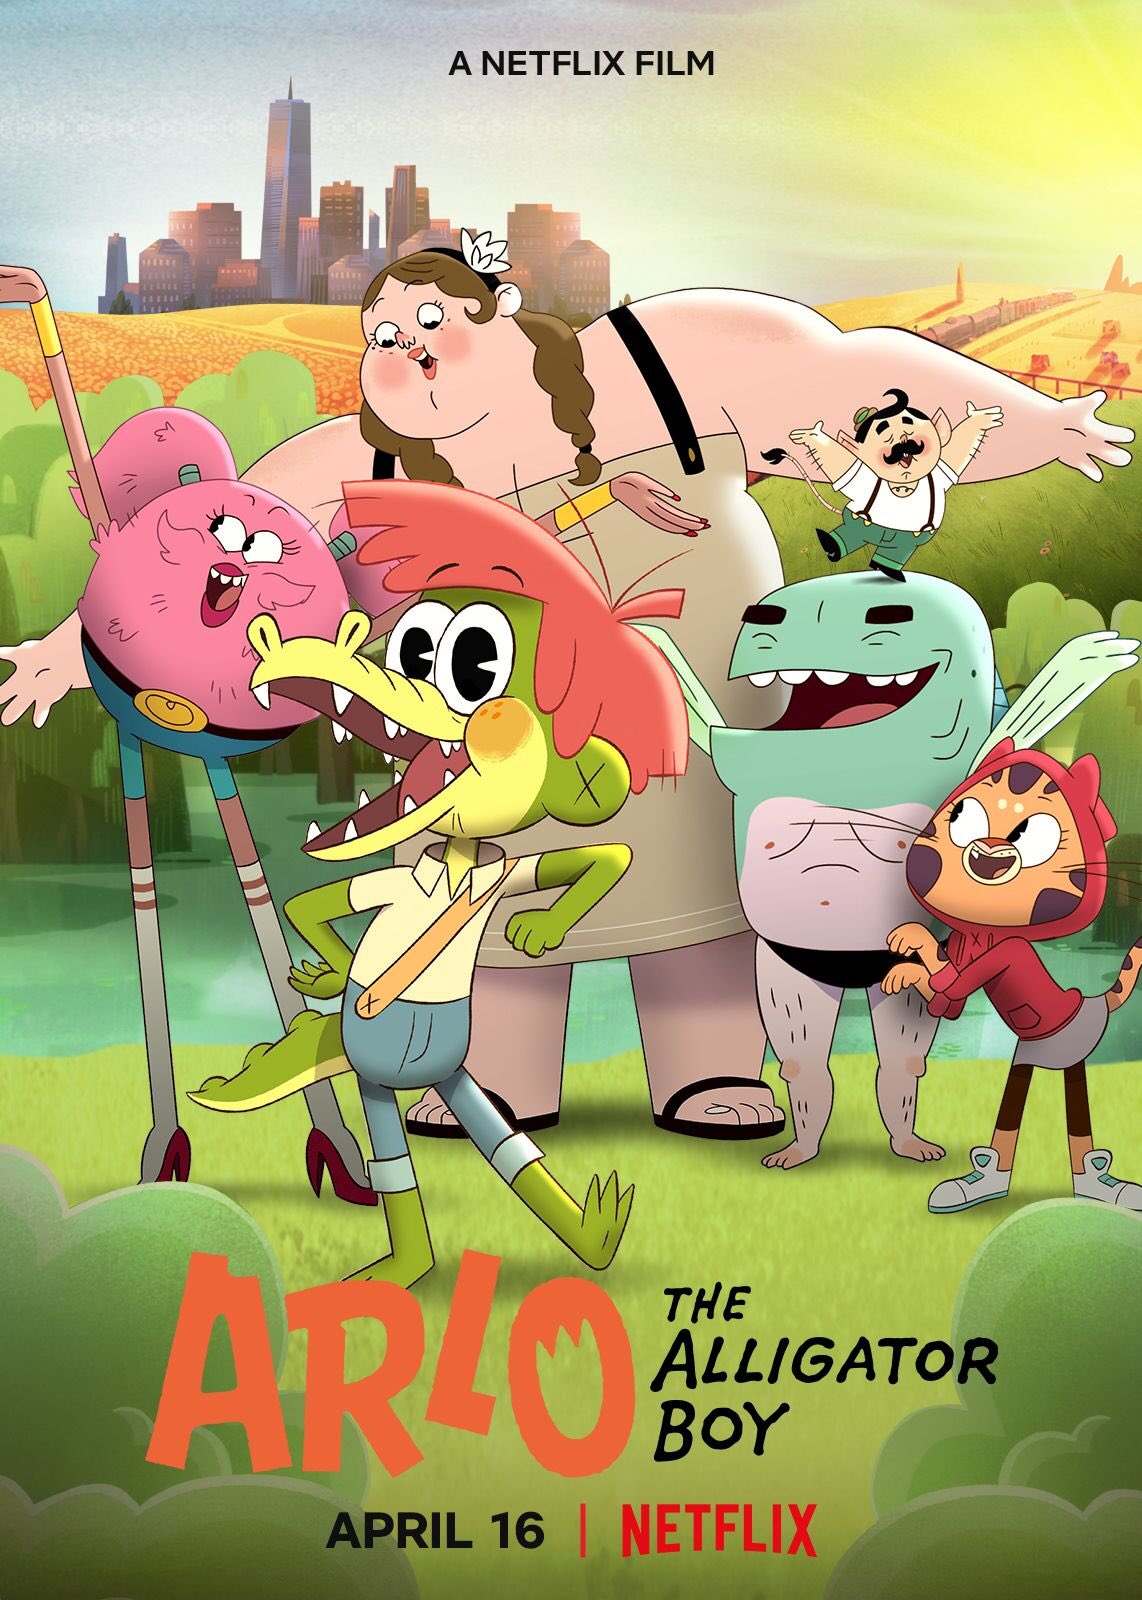 Nonton film Arlo the Alligator Boy layarkaca21 indoxx1 ganool online streaming terbaru